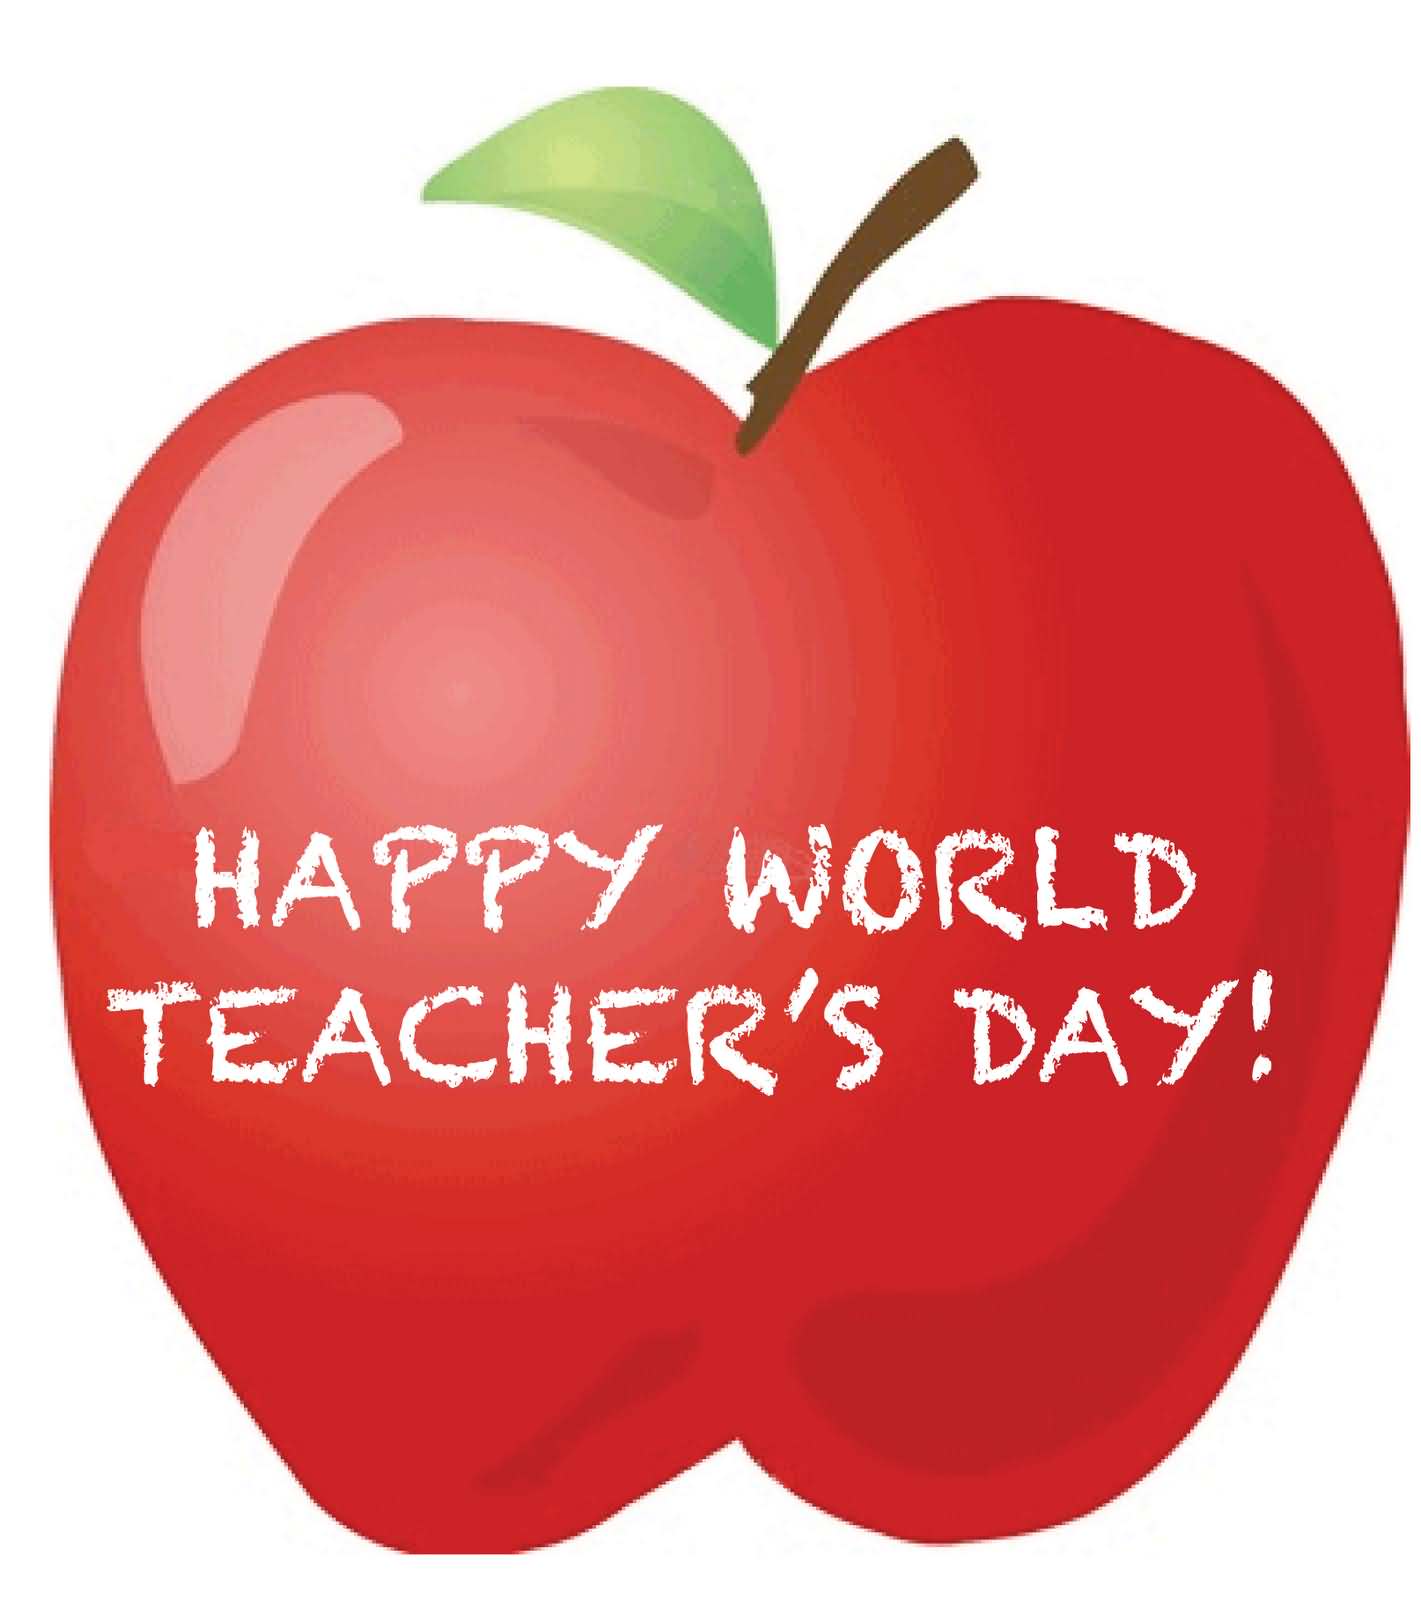 Happy World Teachers’ Day Written on Apple Clipart